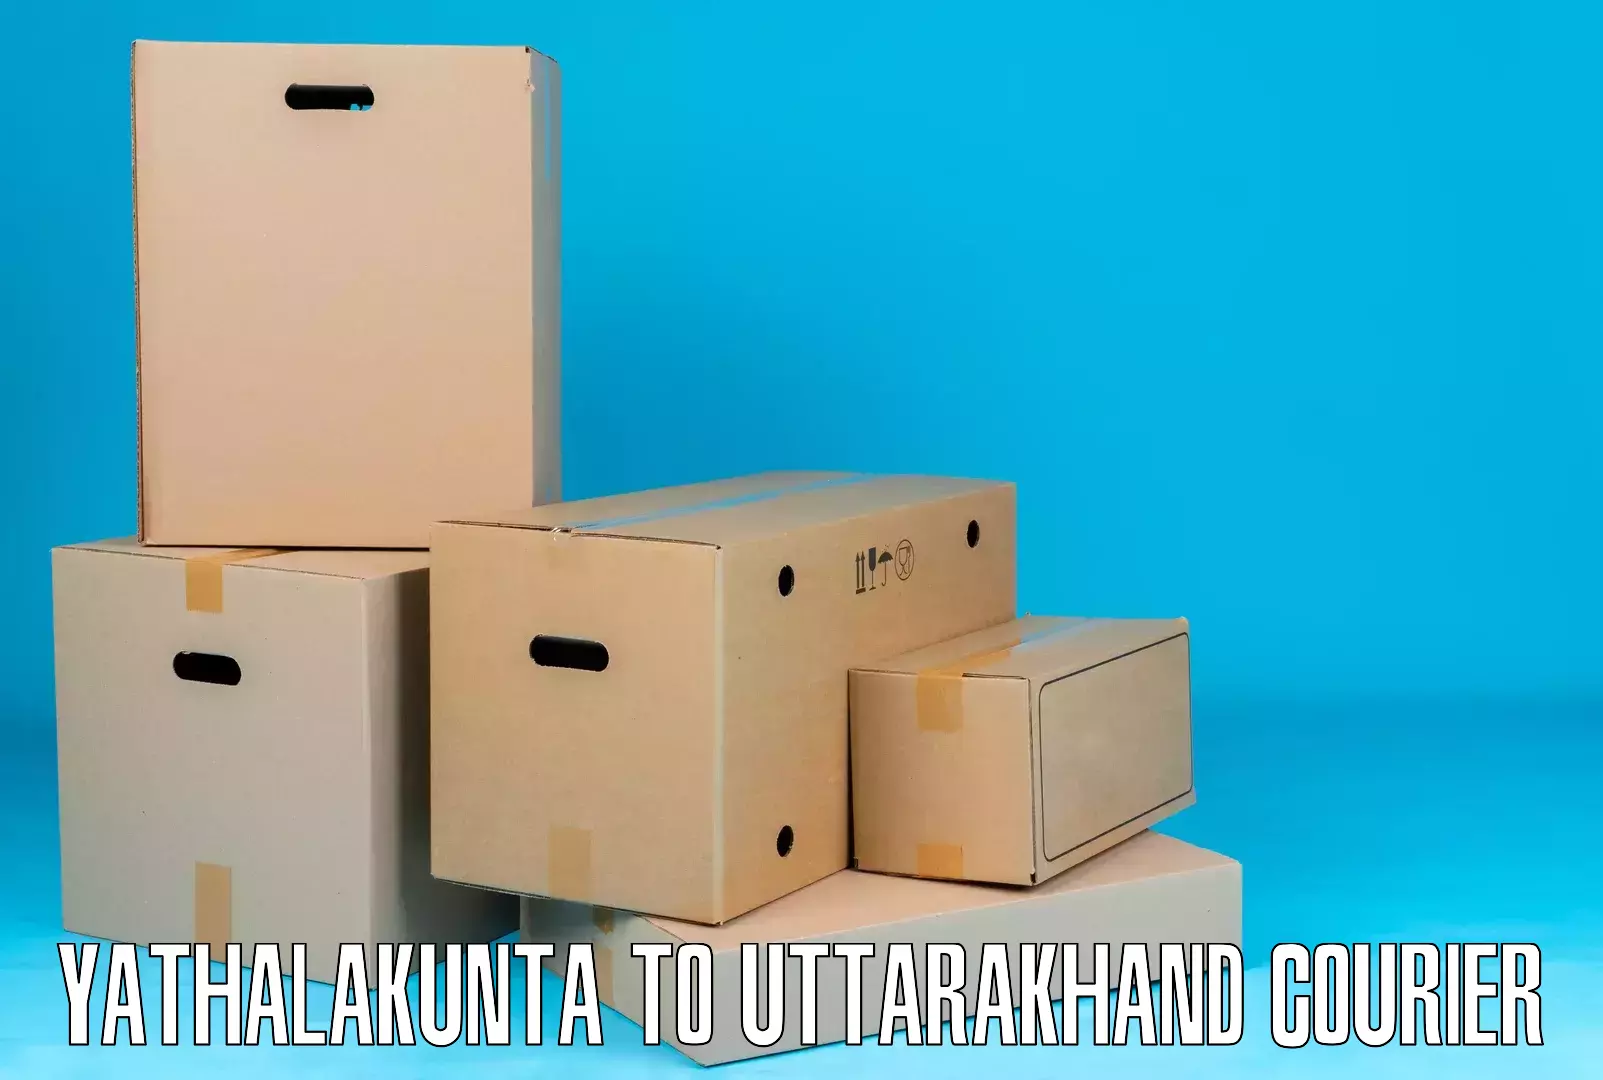 Versatile courier offerings Yathalakunta to Lansdowne